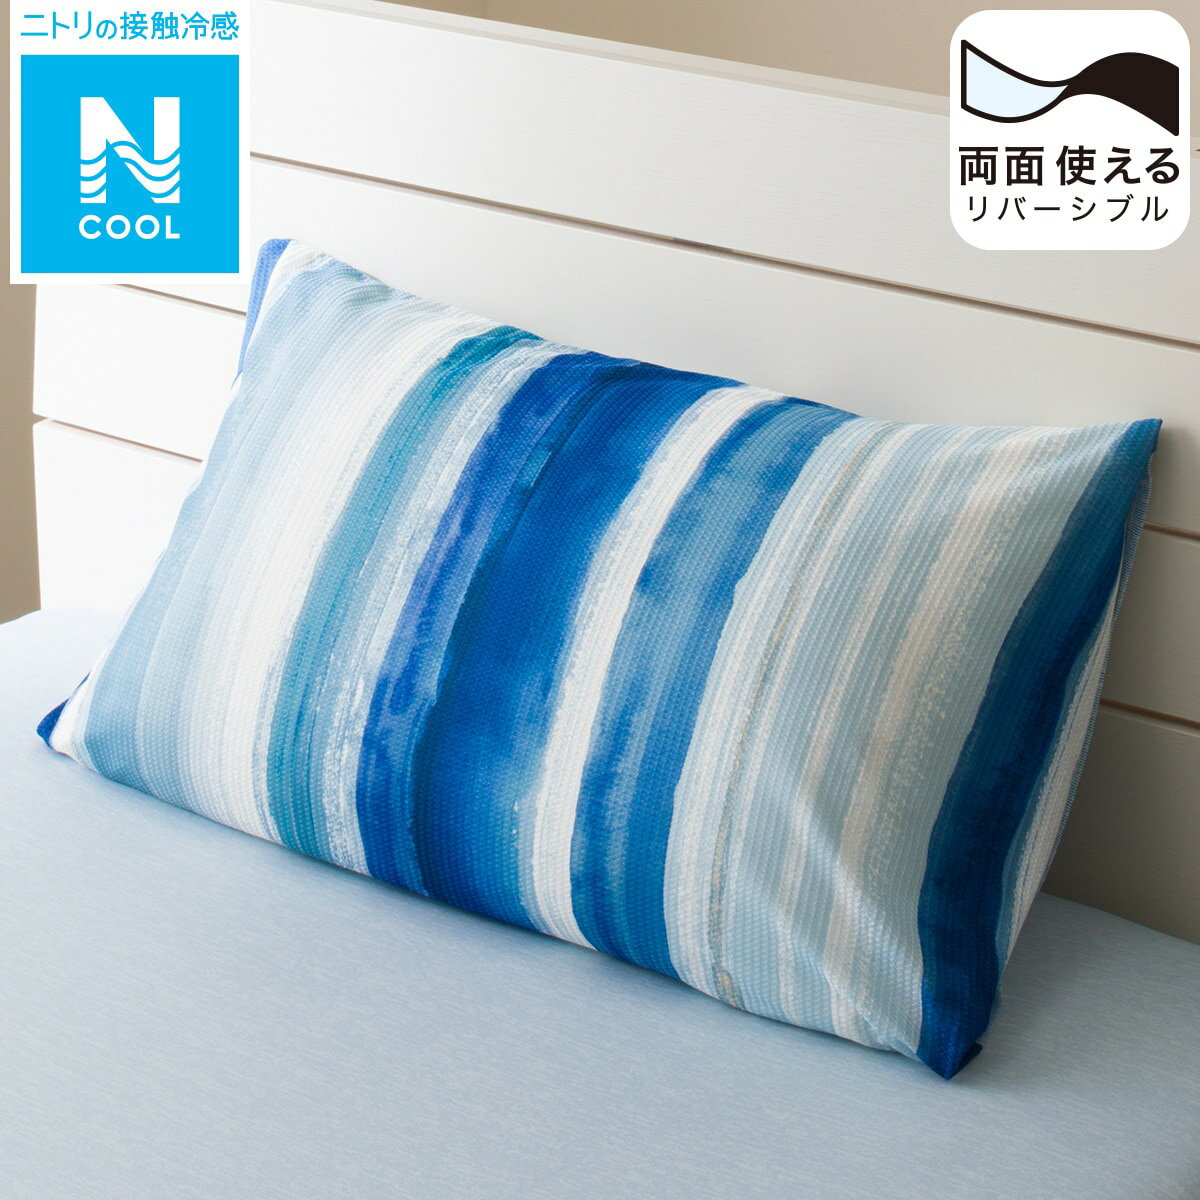 ニトリの枕カバー(Nクール CU2310)   【1年保証】(布団・寝具)